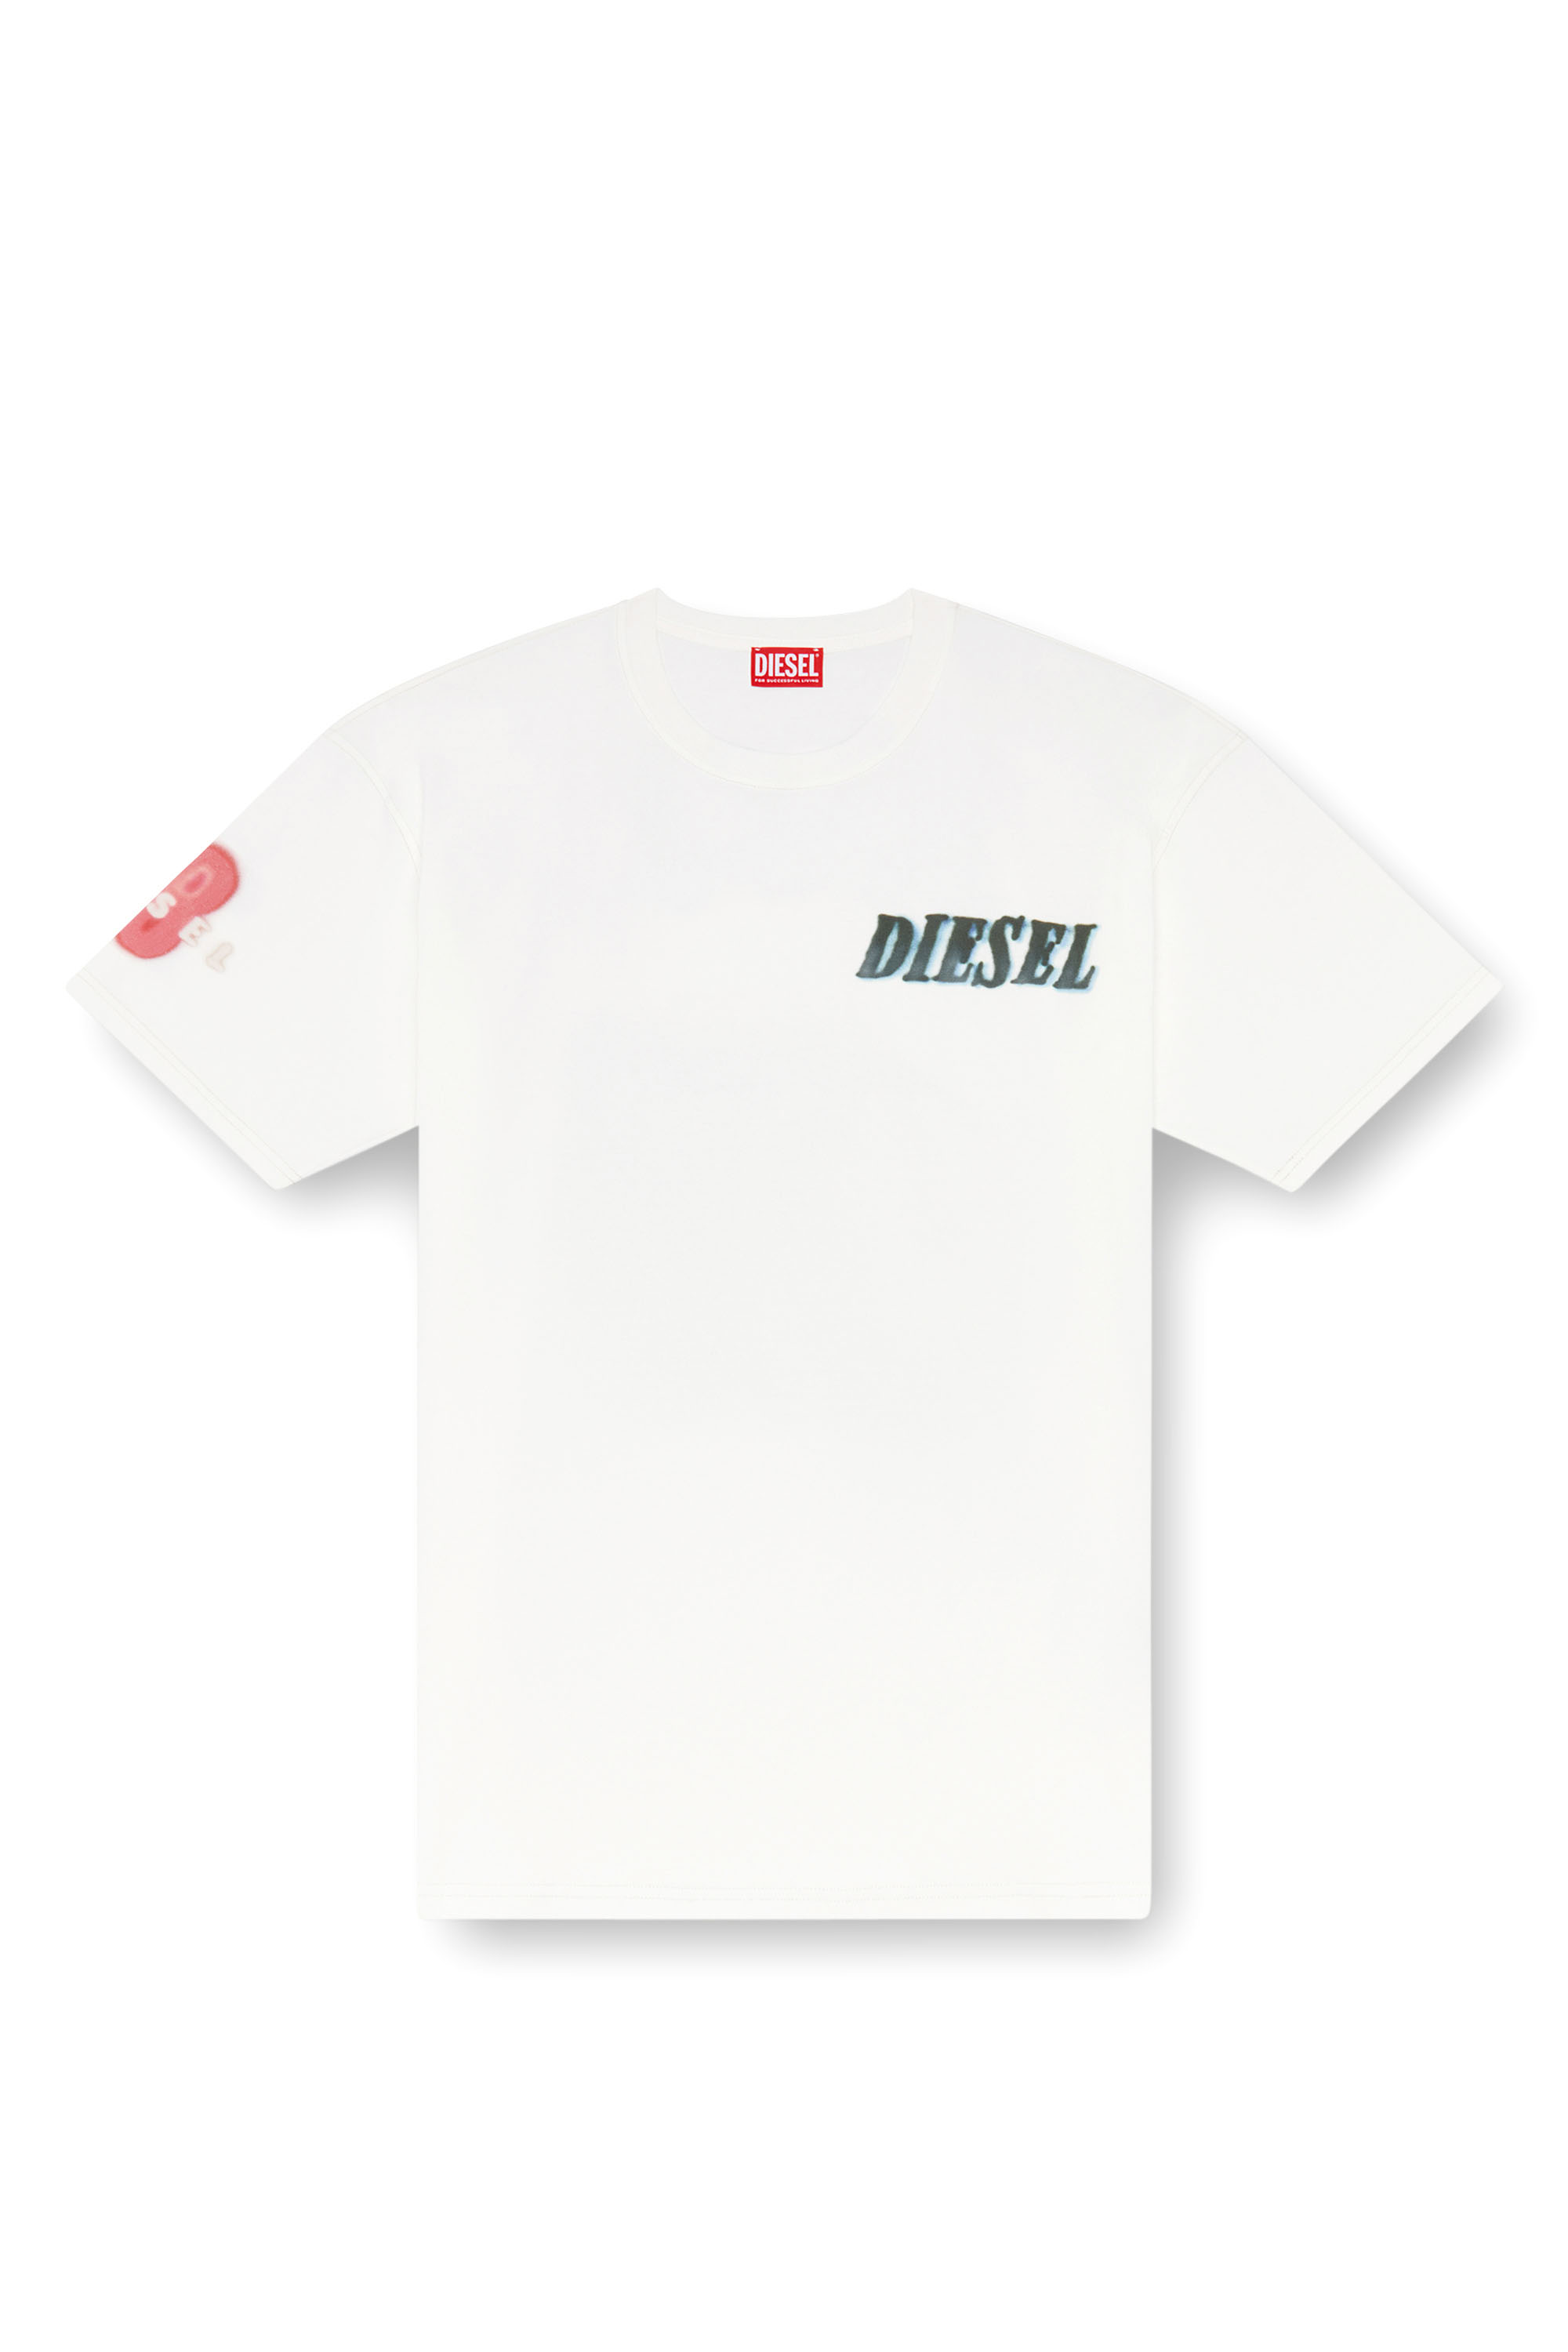 Diesel - T-BOXT-Q19, Homme T-shirt avec logo et imprimé pneu in Blanc - Image 3